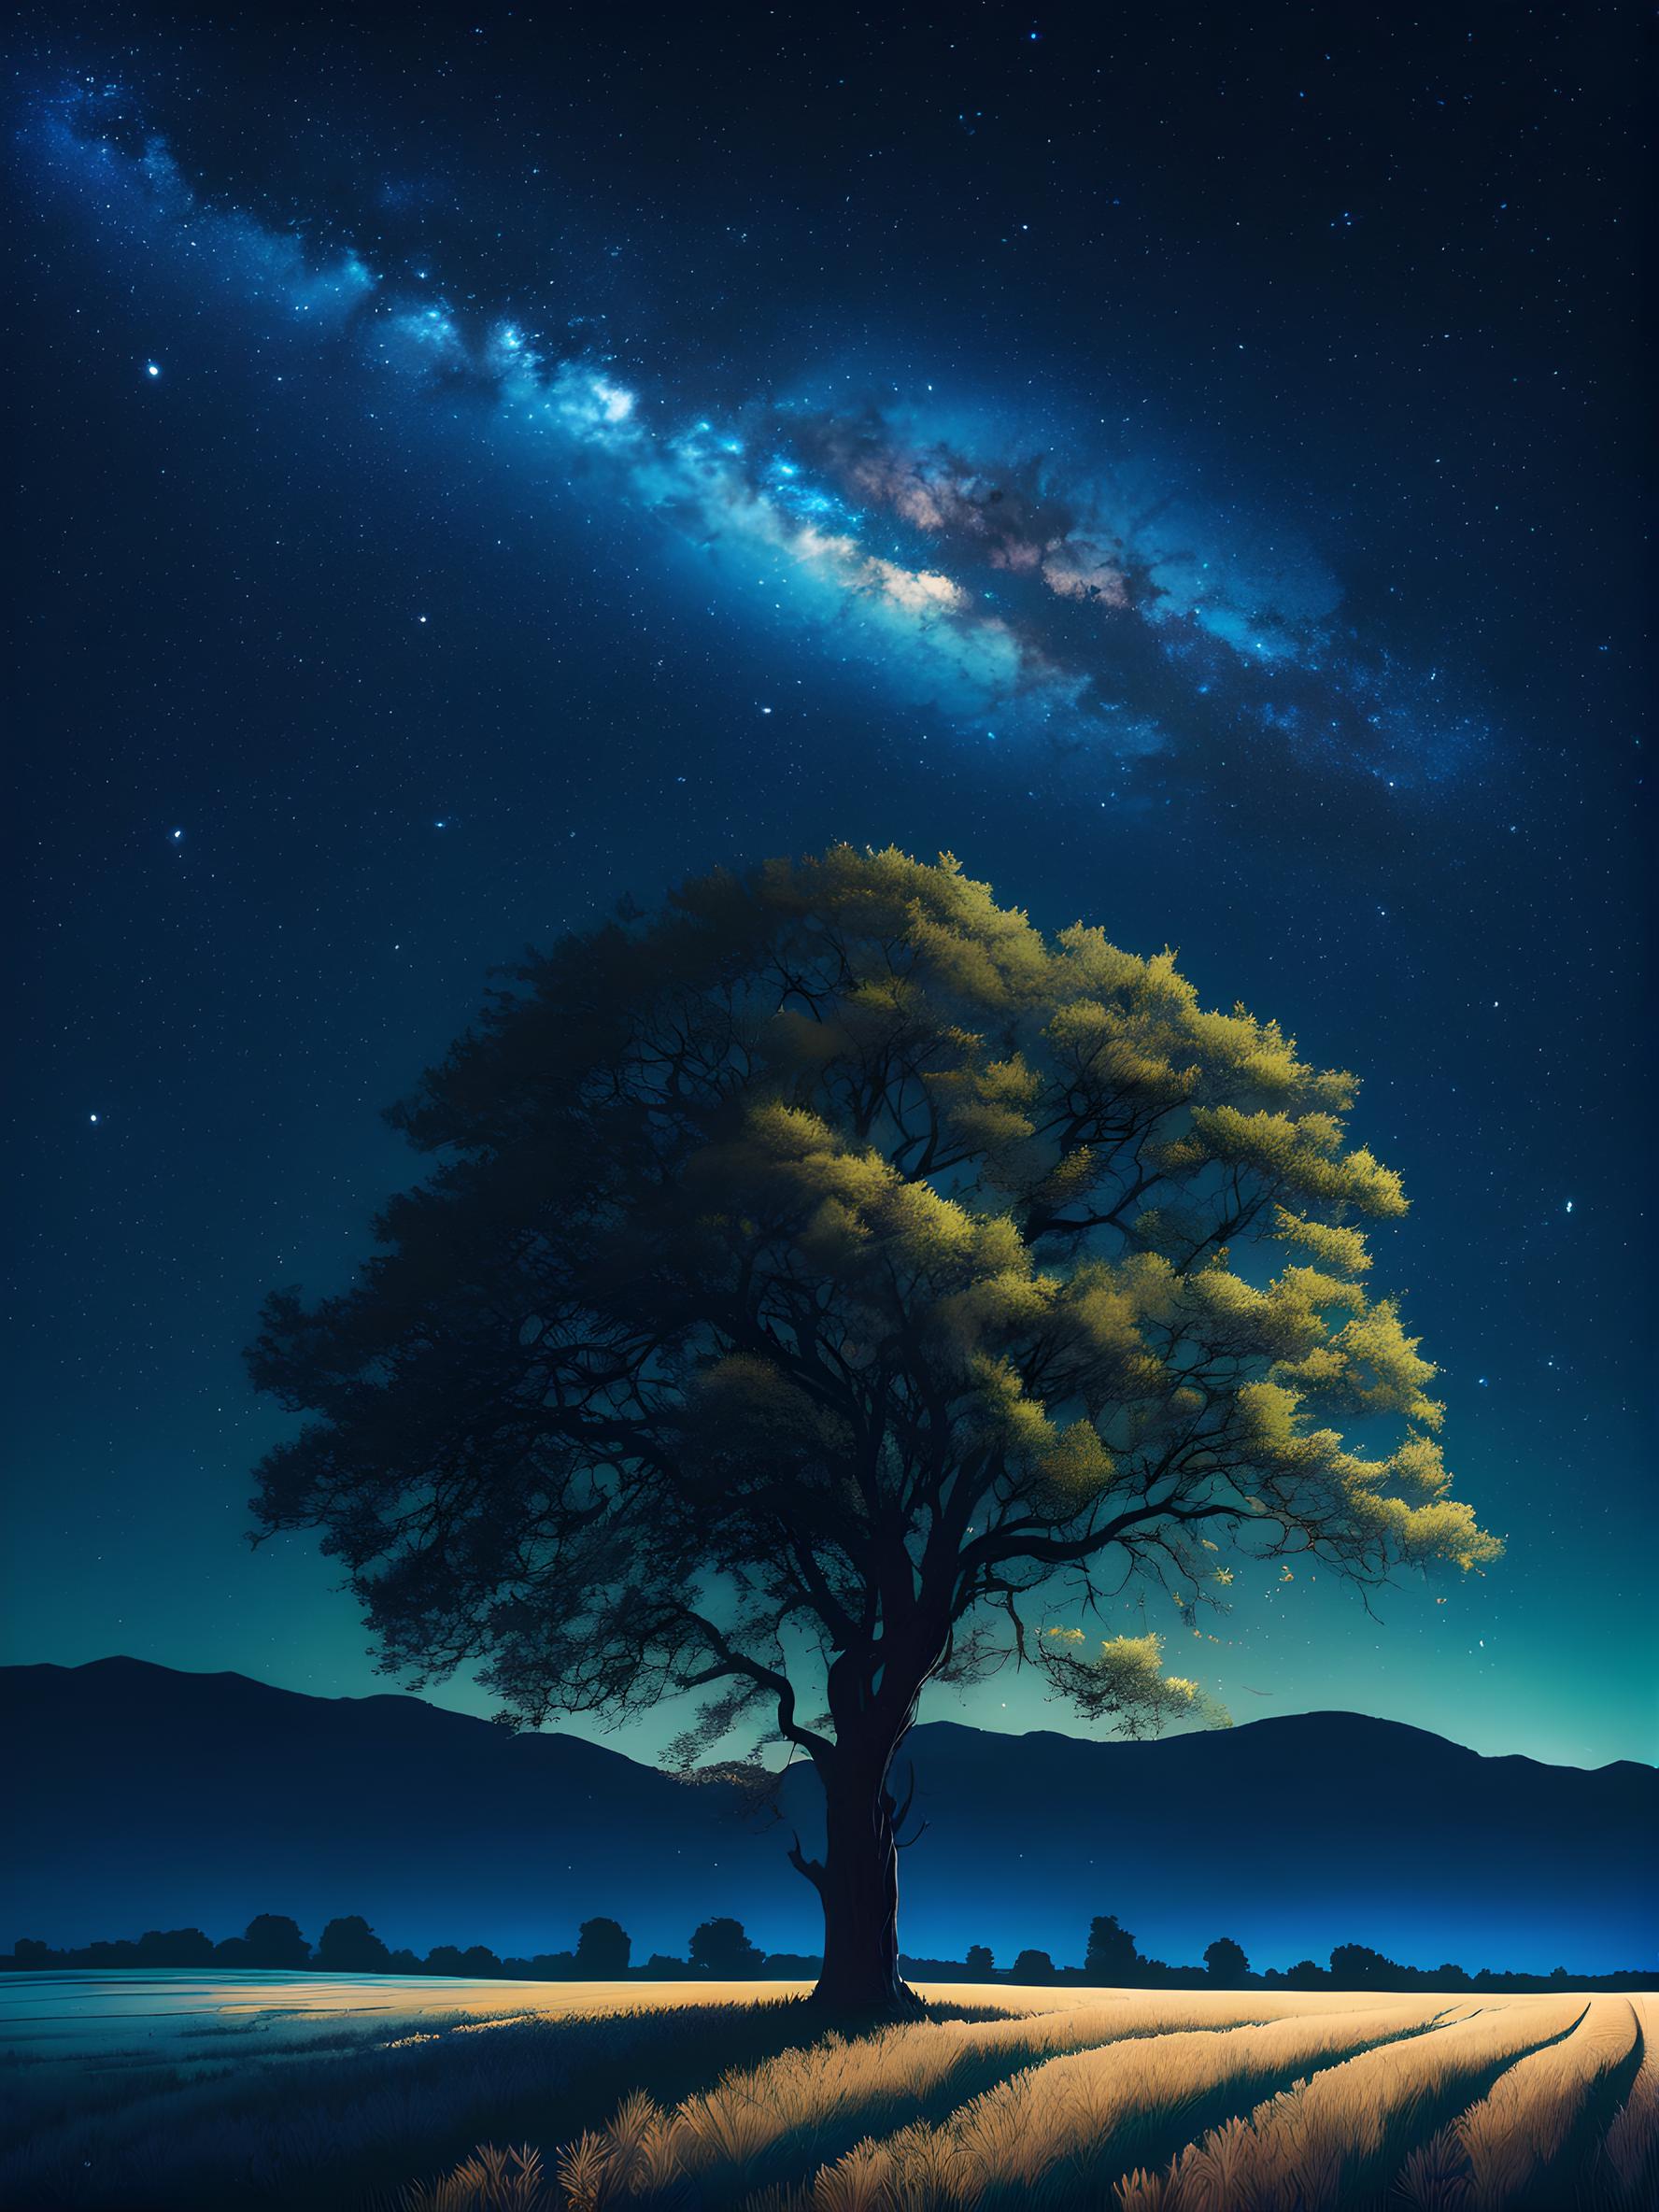 星空下的孤独树影